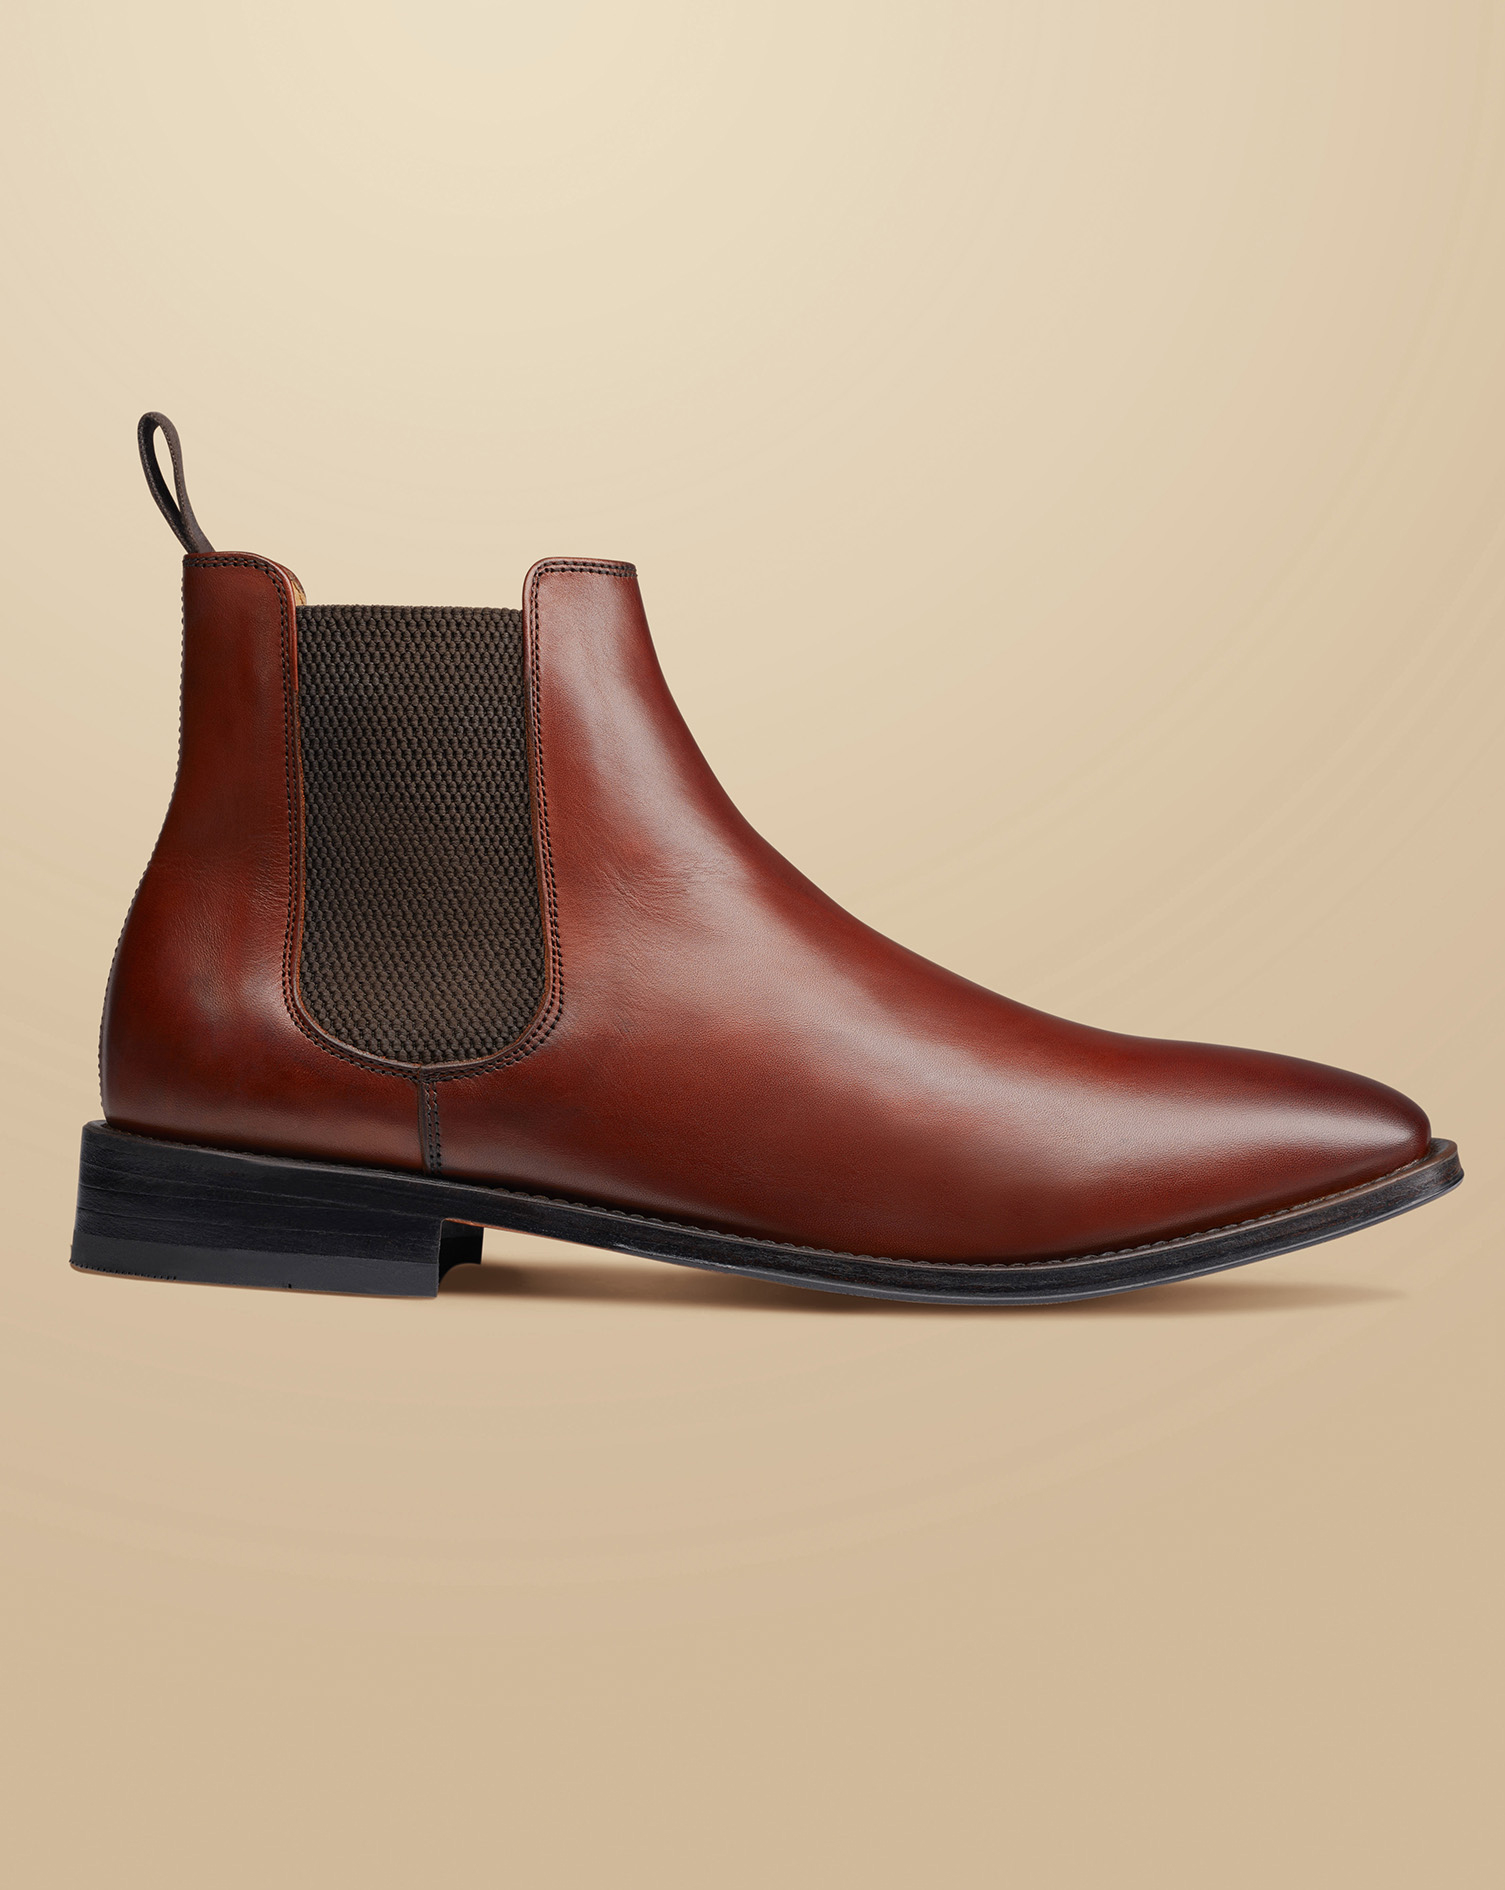 Men's Charles Tyrwhitt Leather Chelsea Boots - Chestnut Brown Size 9.5
